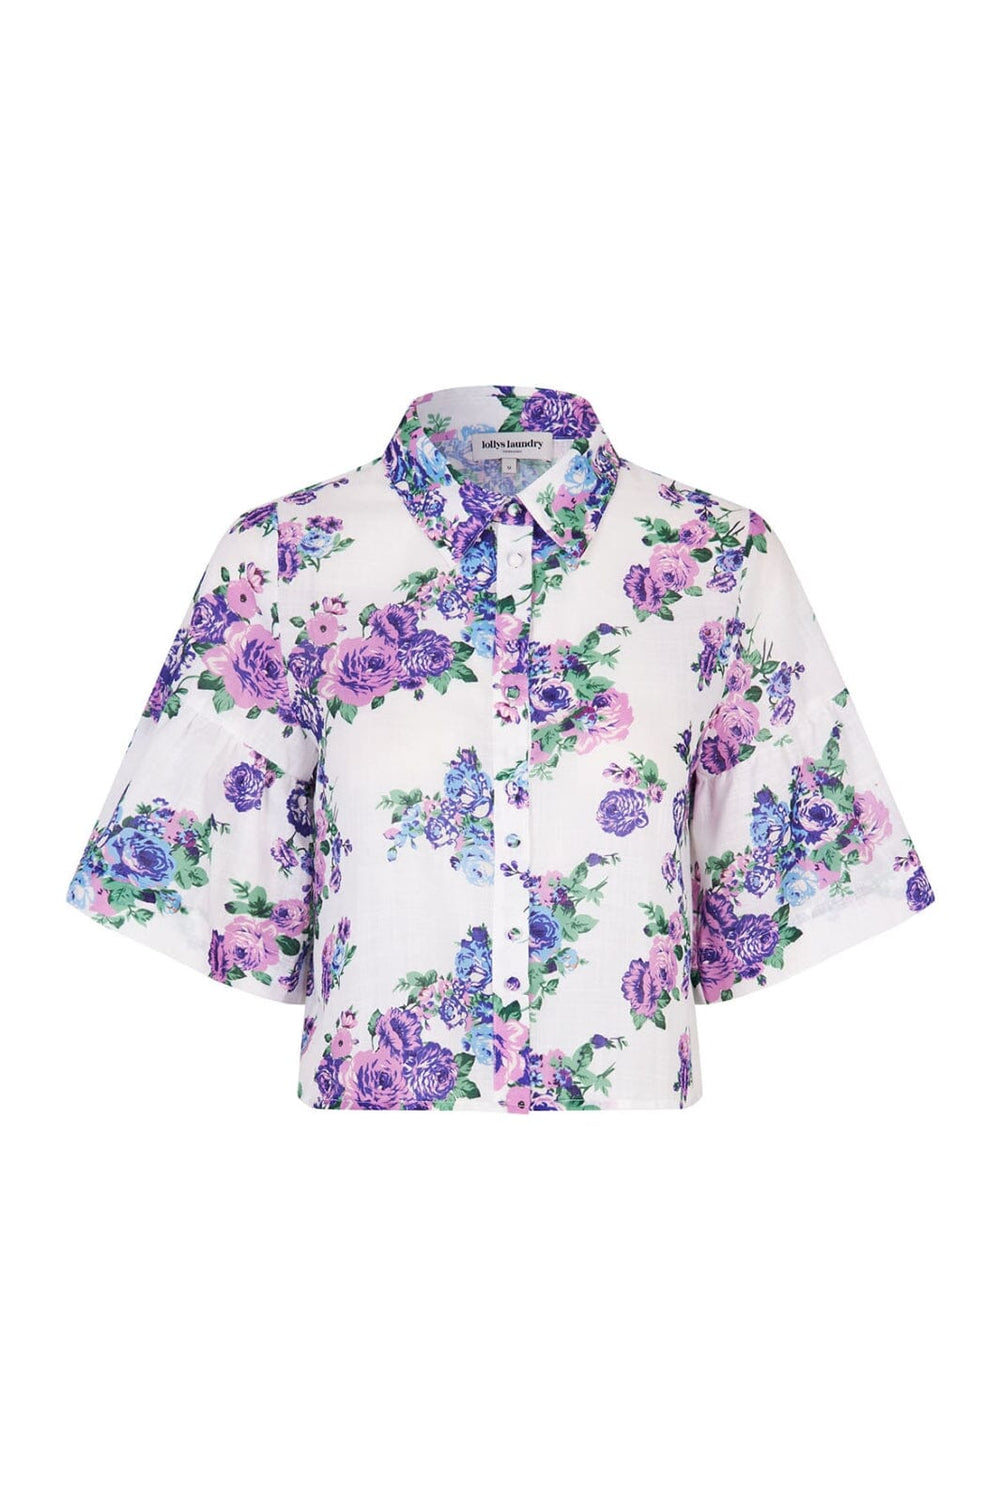 Lollys Laundry - SummerLL Shirt SS 24221-1012 - 20 Blue Skjorter 